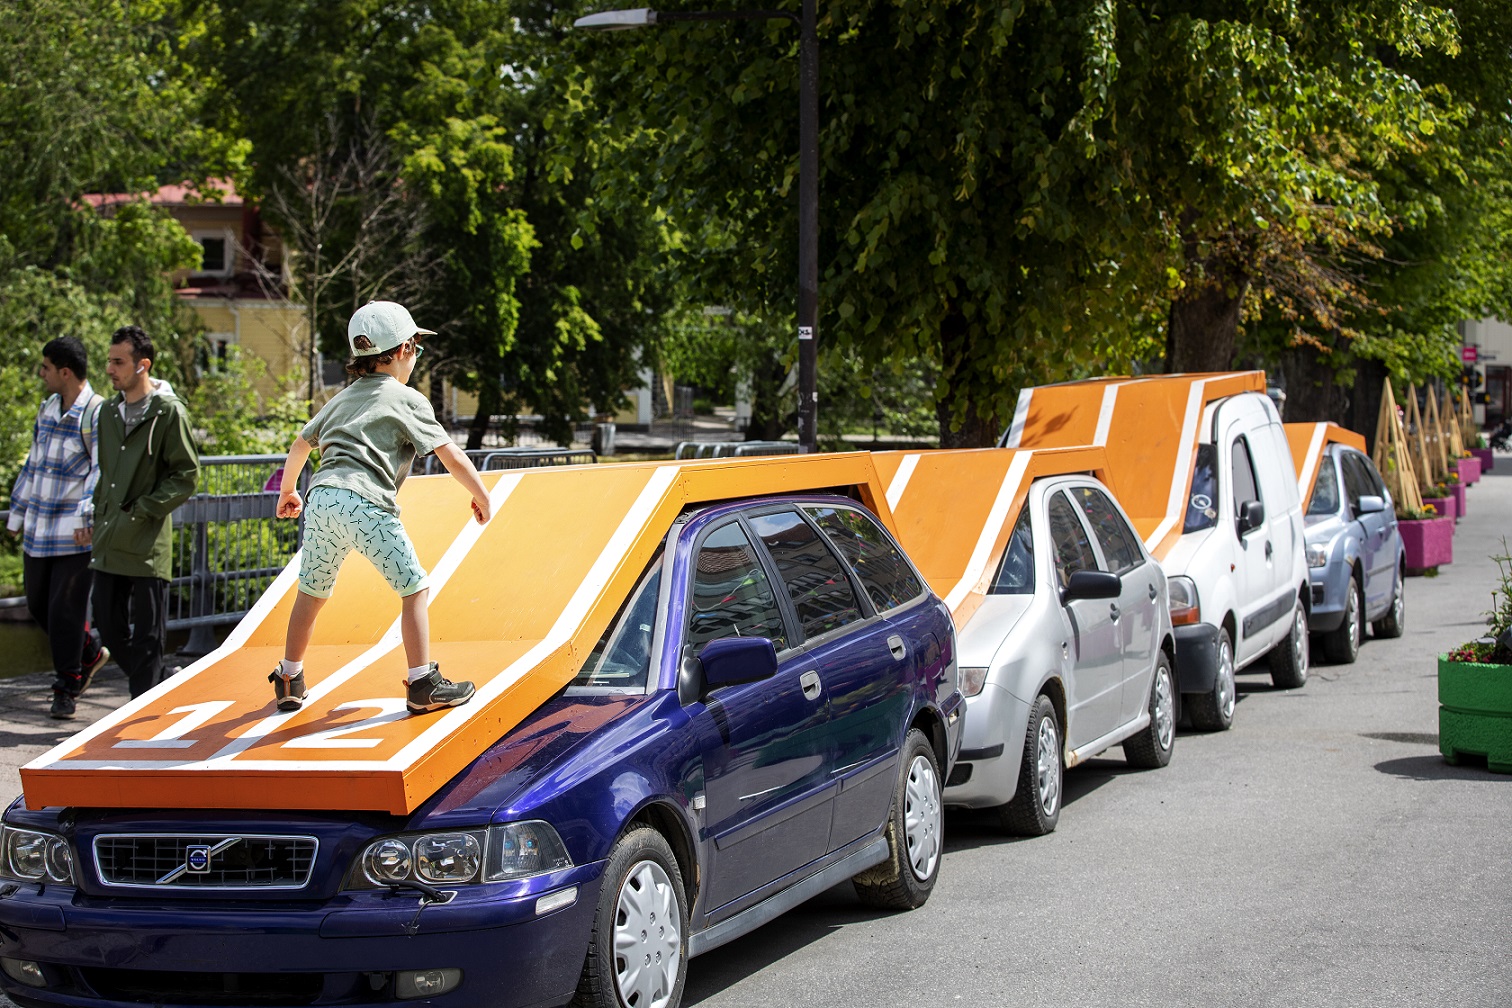 Utomhus på en gata står fyra bilar i olika storlekar och modeller uppradade. Över bilarna har konstnären byggt en orange springbanna med två spår som följer bilarnas tak och form. Konstverket öppnar upp för tanken om att köra en spring tävling över bilarna och på bilden har ett barn klättrat upp på springbanan och står redo.